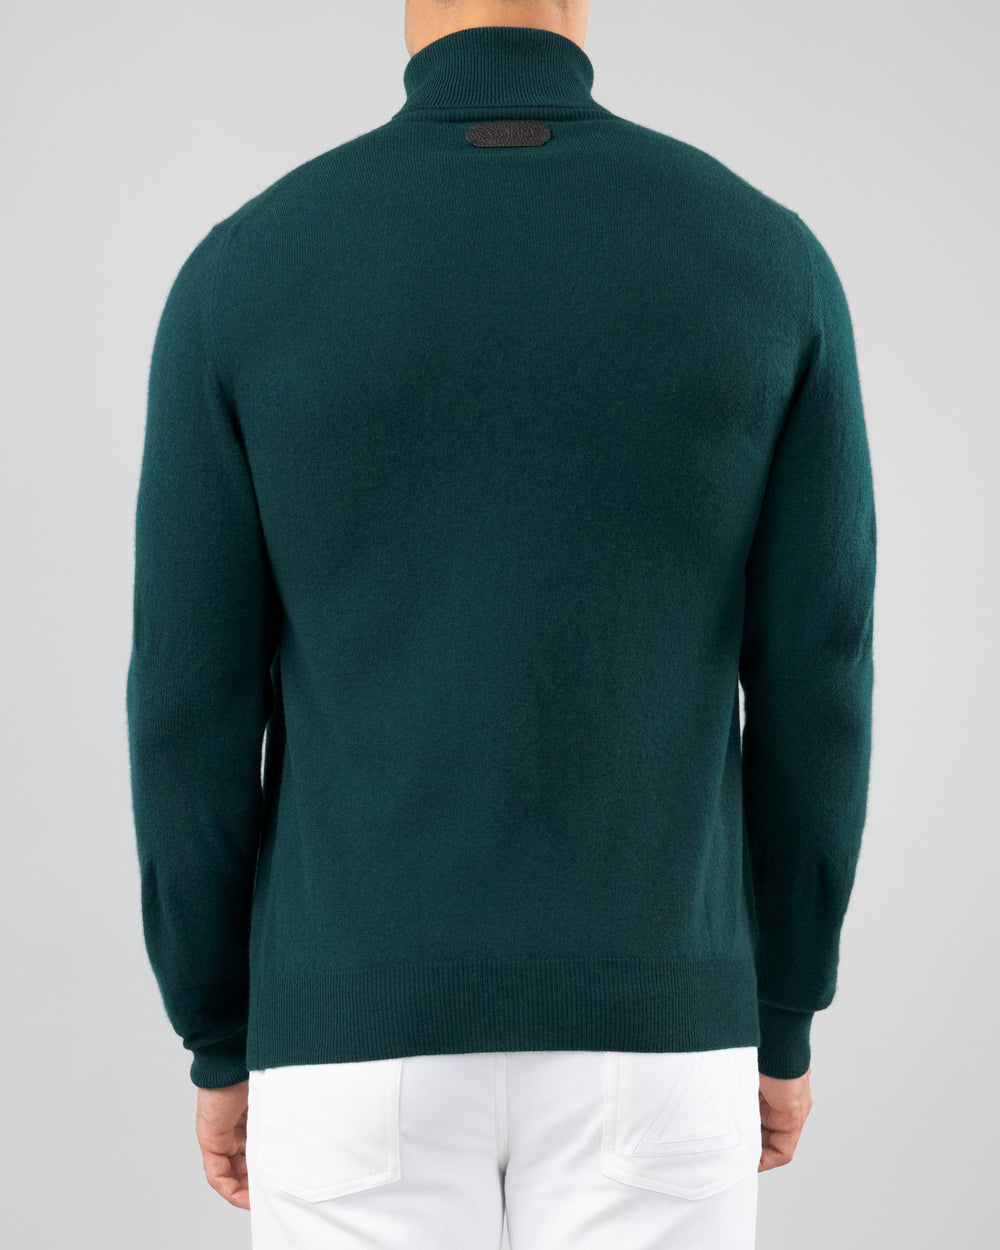 Aspen Cashmere Turtleneck Sweater, Emerald